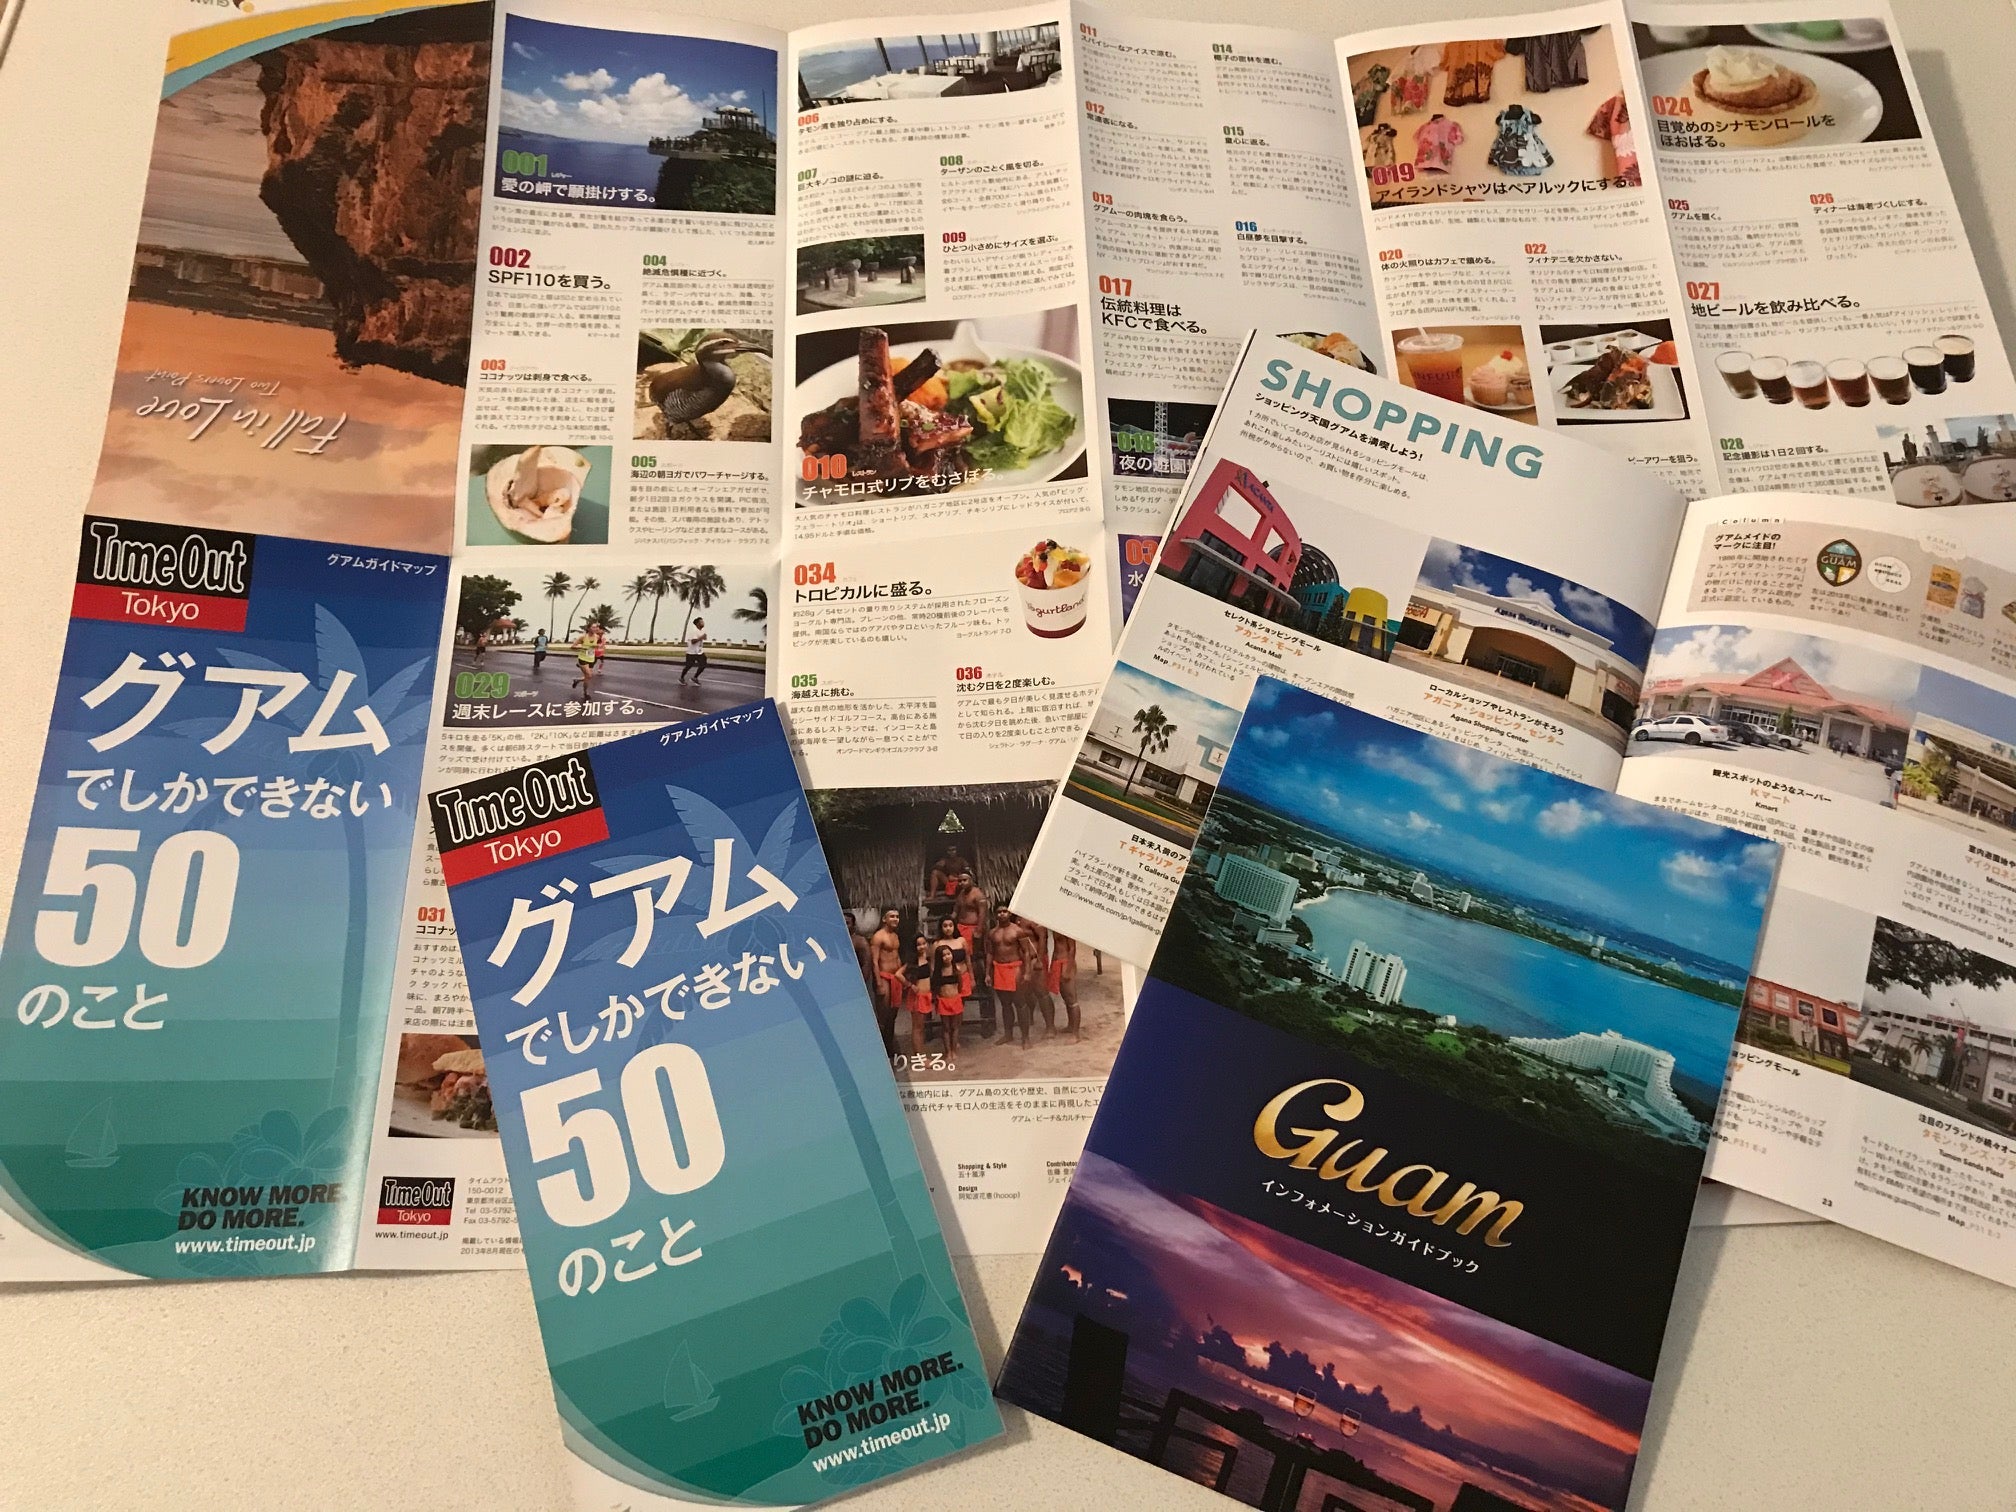 Guamインフォメーションガイドブックとマップ「グアムでしかできない50